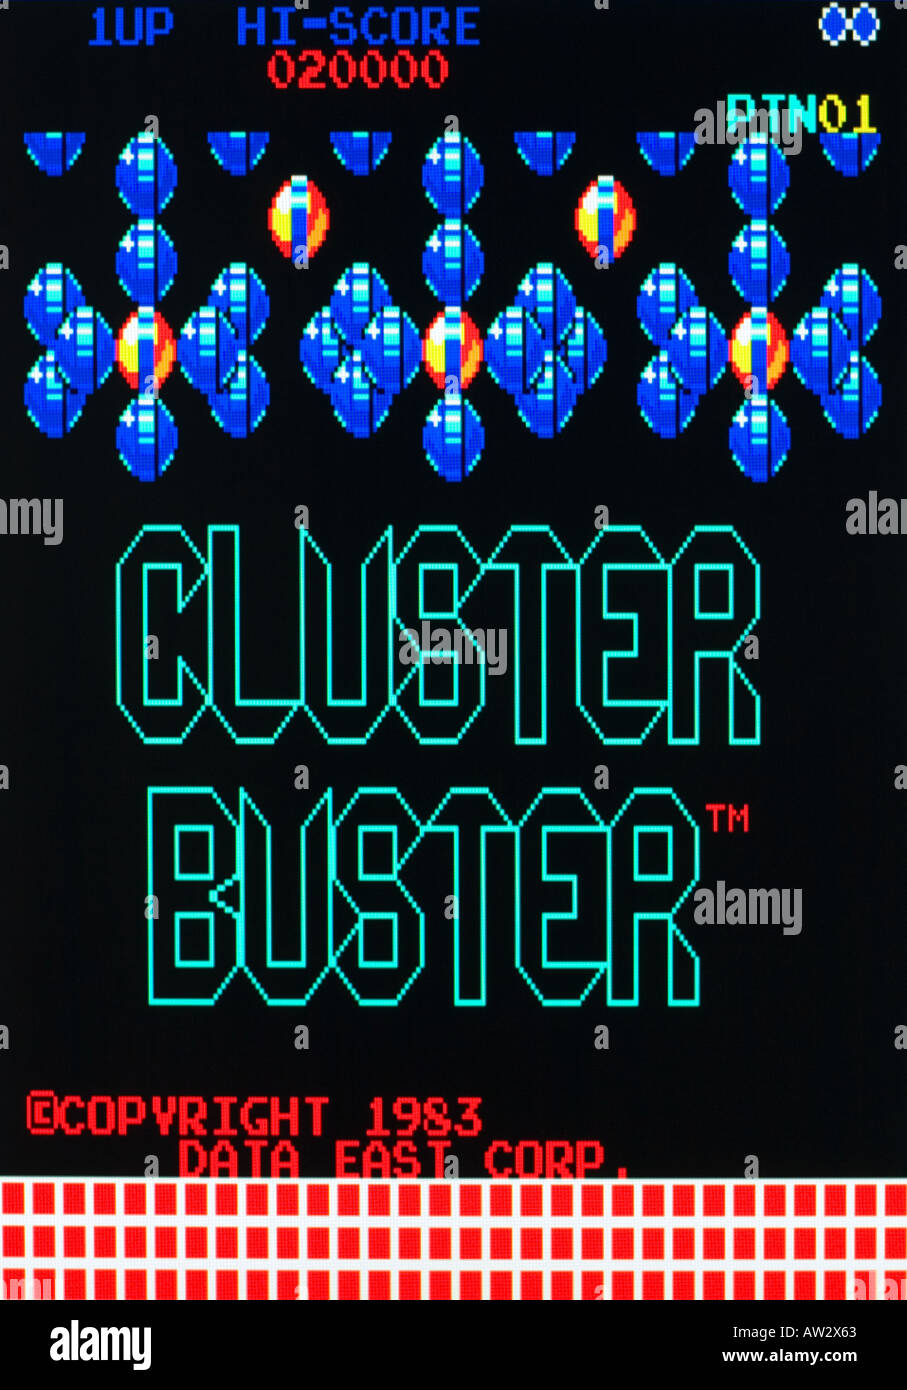 Graplop aka Cluster Buster Daten Ost 1983 Vintage Arcade Videospiel Screenshot - nur zur redaktionellen Nutzung Stockfoto